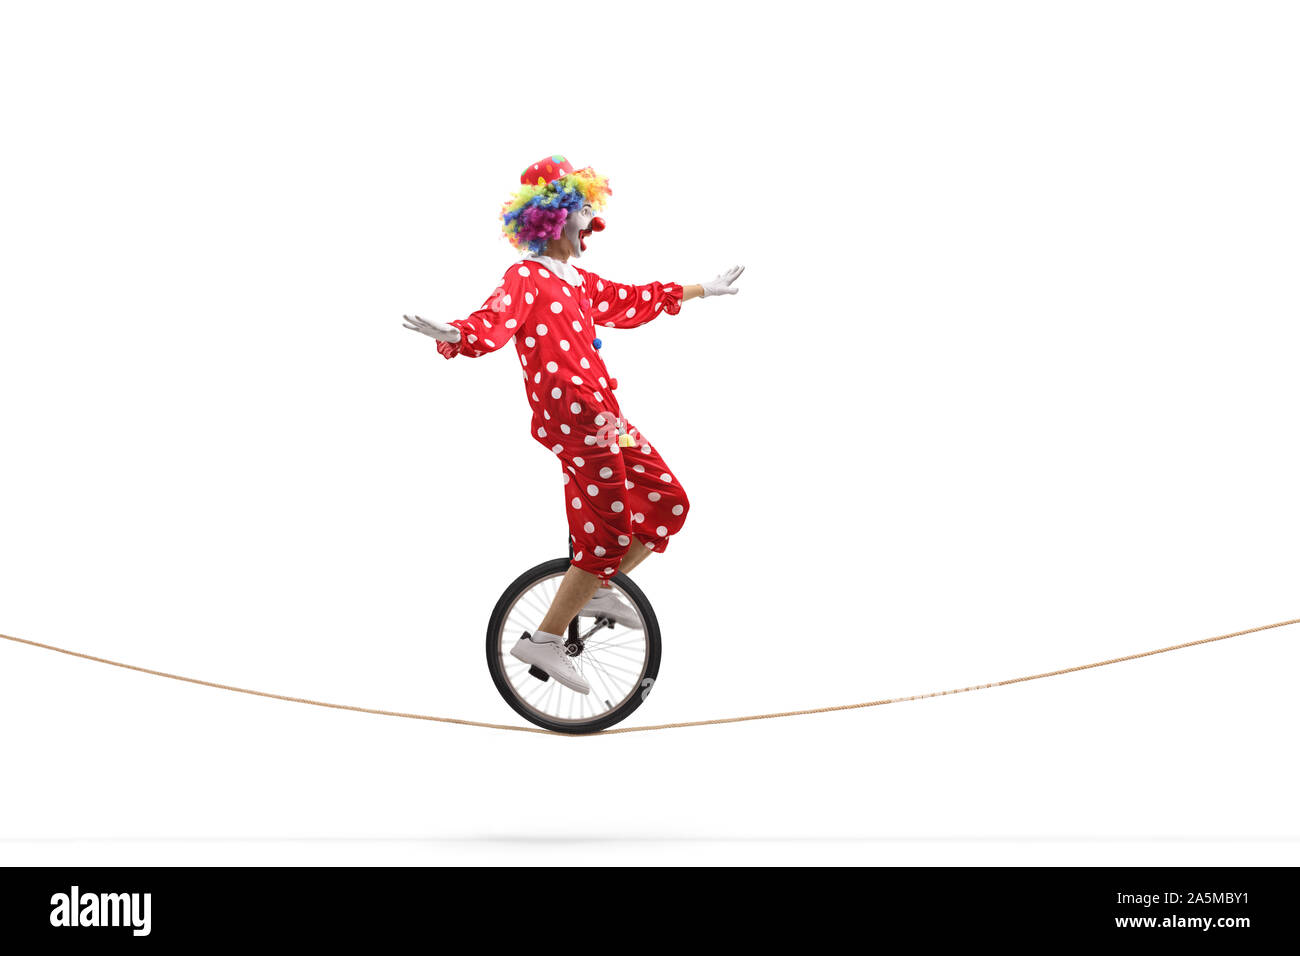 Profil de toute la longueur d'un coup peur clown équitation un monocycle sur une corde isolé sur fond blanc Banque D'Images